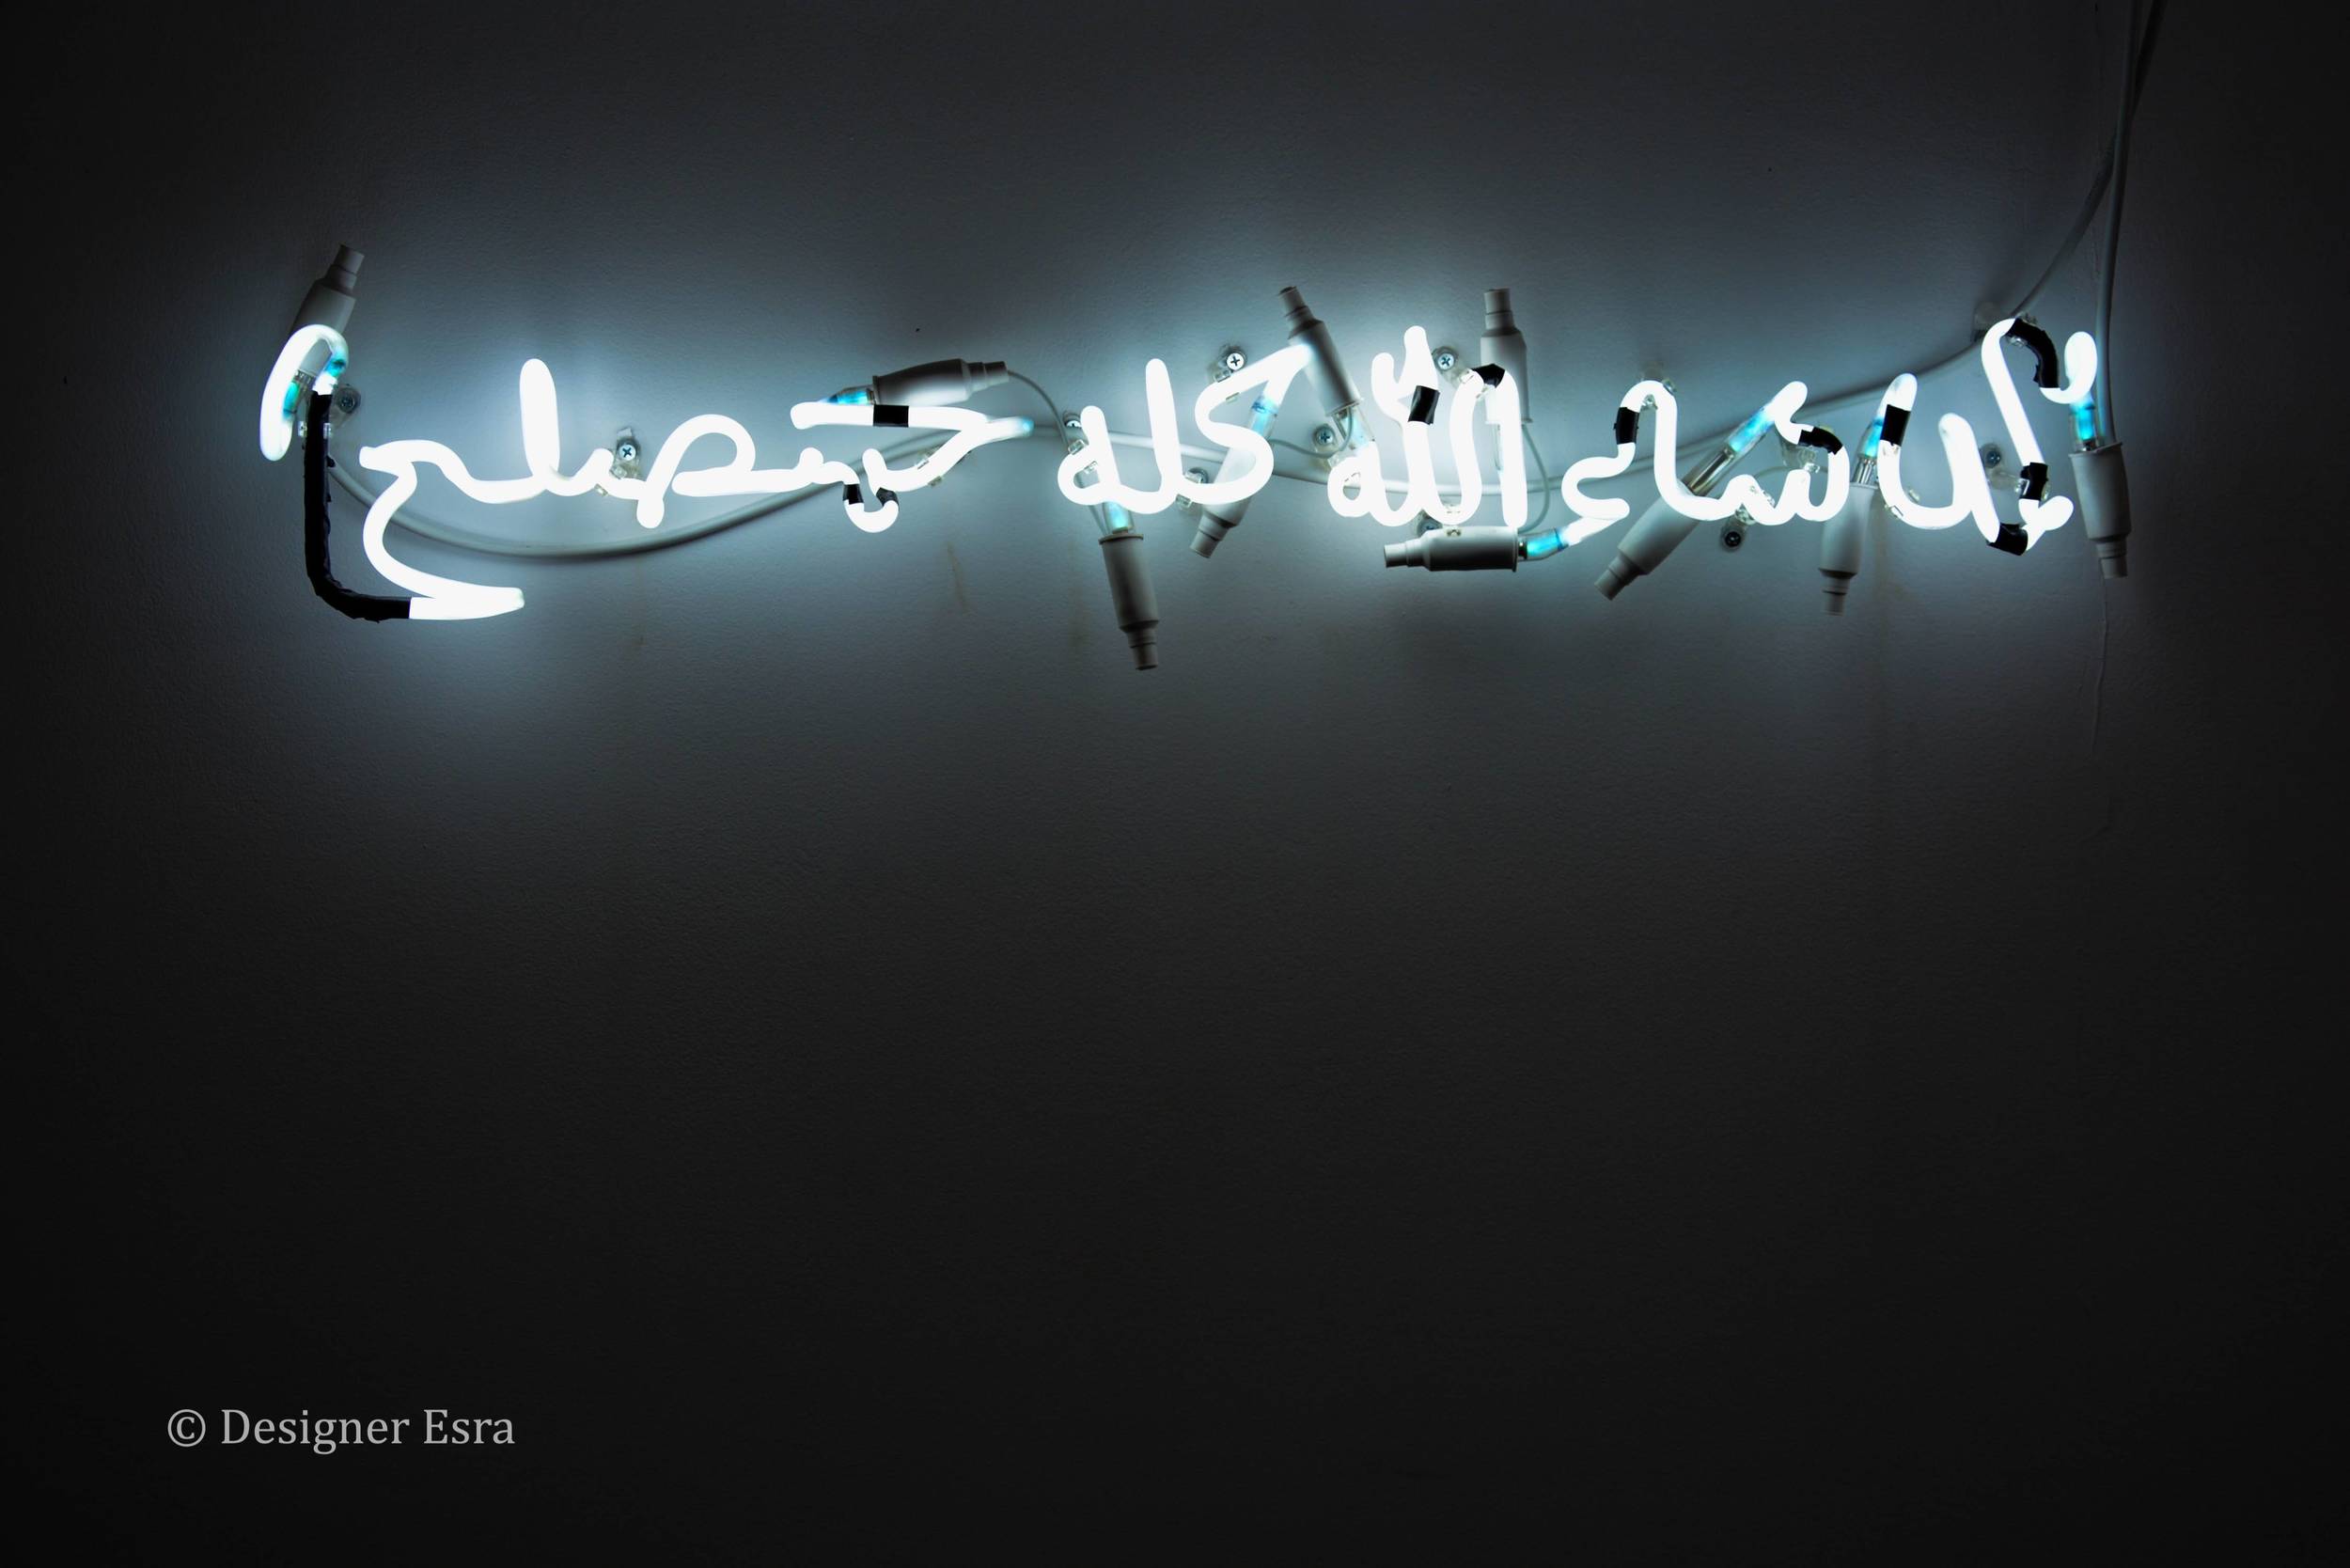 Give Me the Light by Ayman Yossri Daydban 